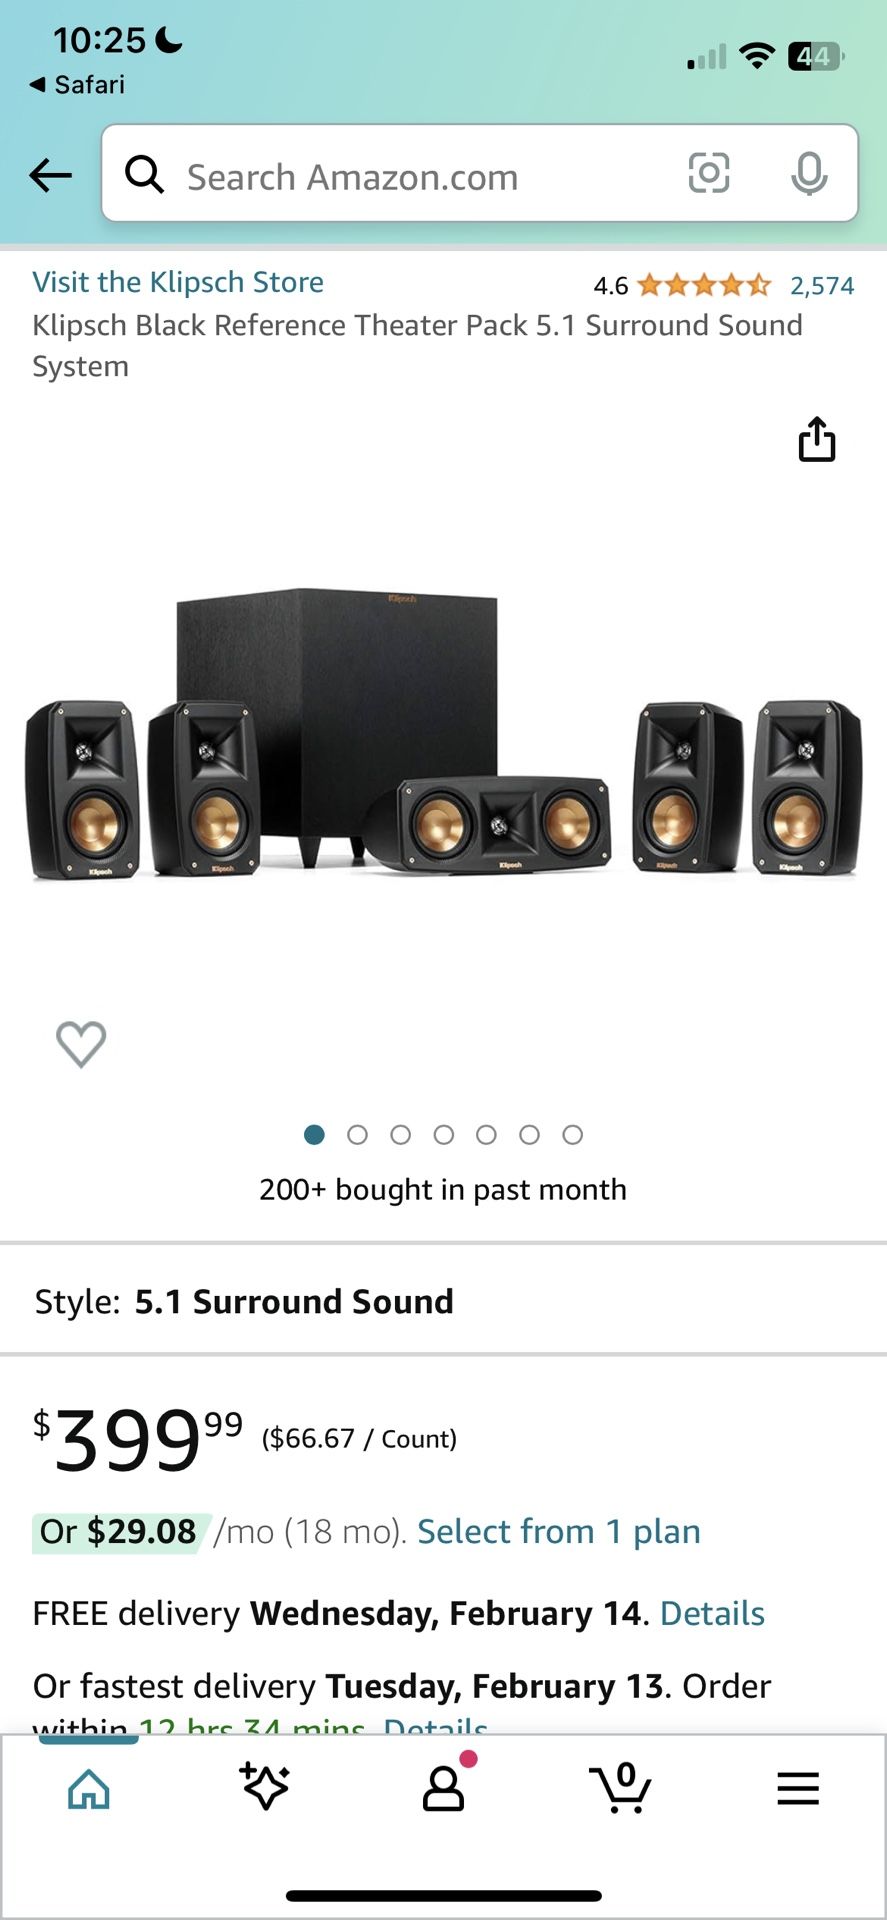 Surround Sound System